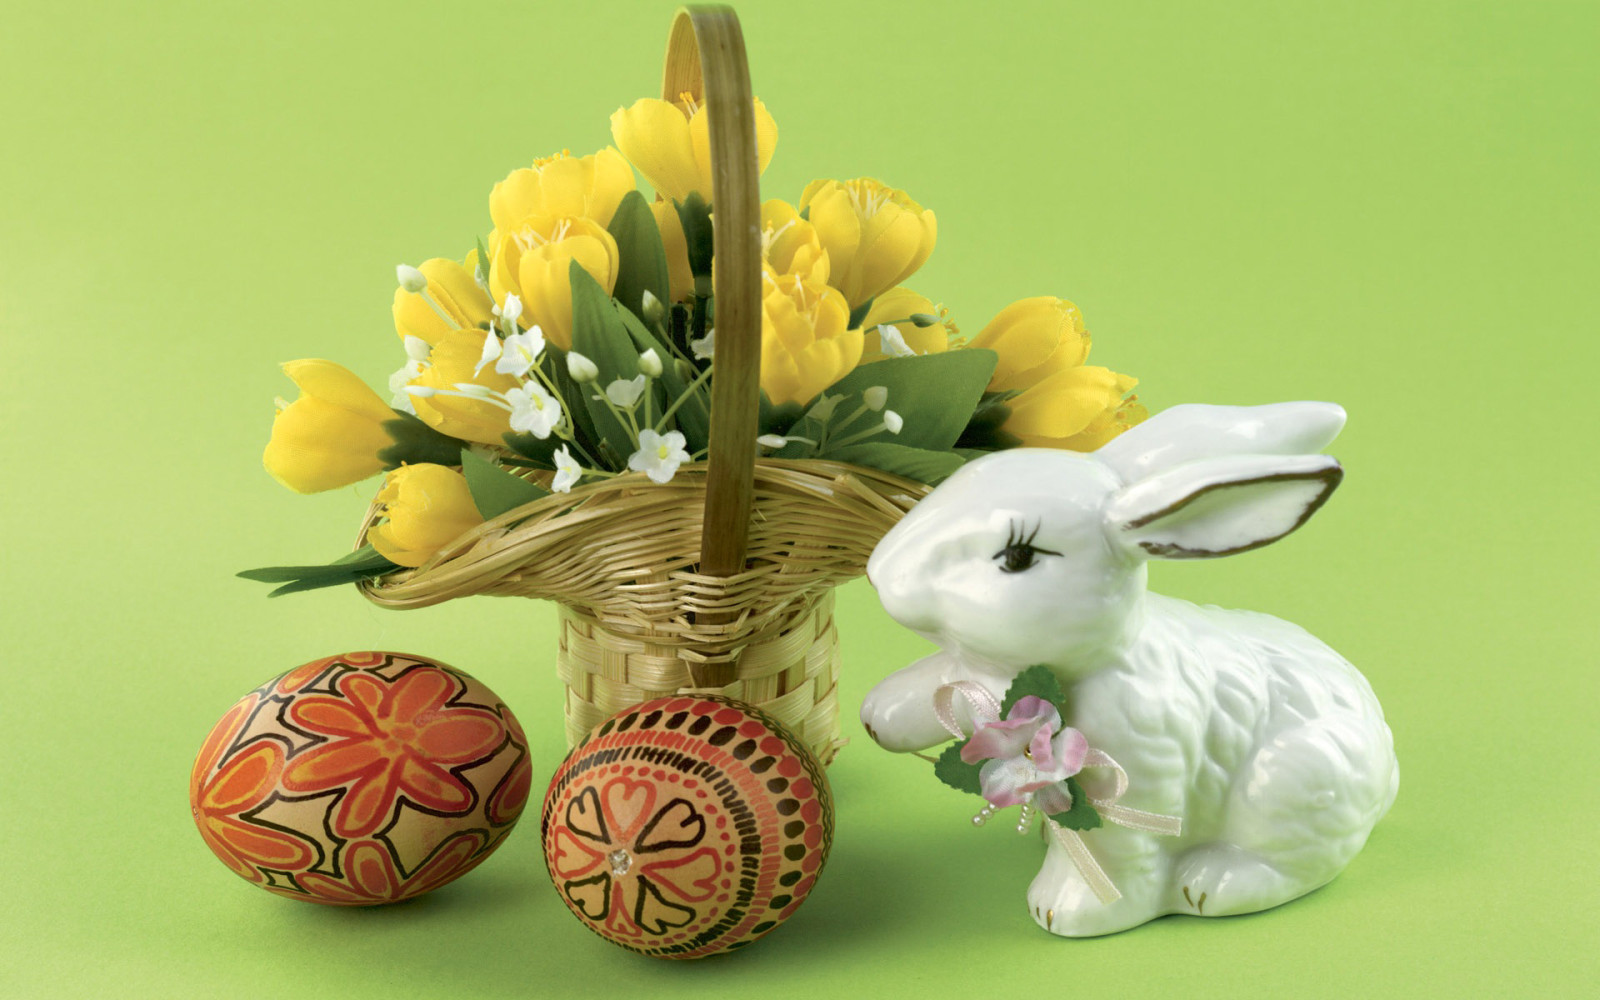 ไข่, ดอกไม้, ตะกร้า, อีสเตอร์, กระต่าย, Pysanka, วันอาทิตย์